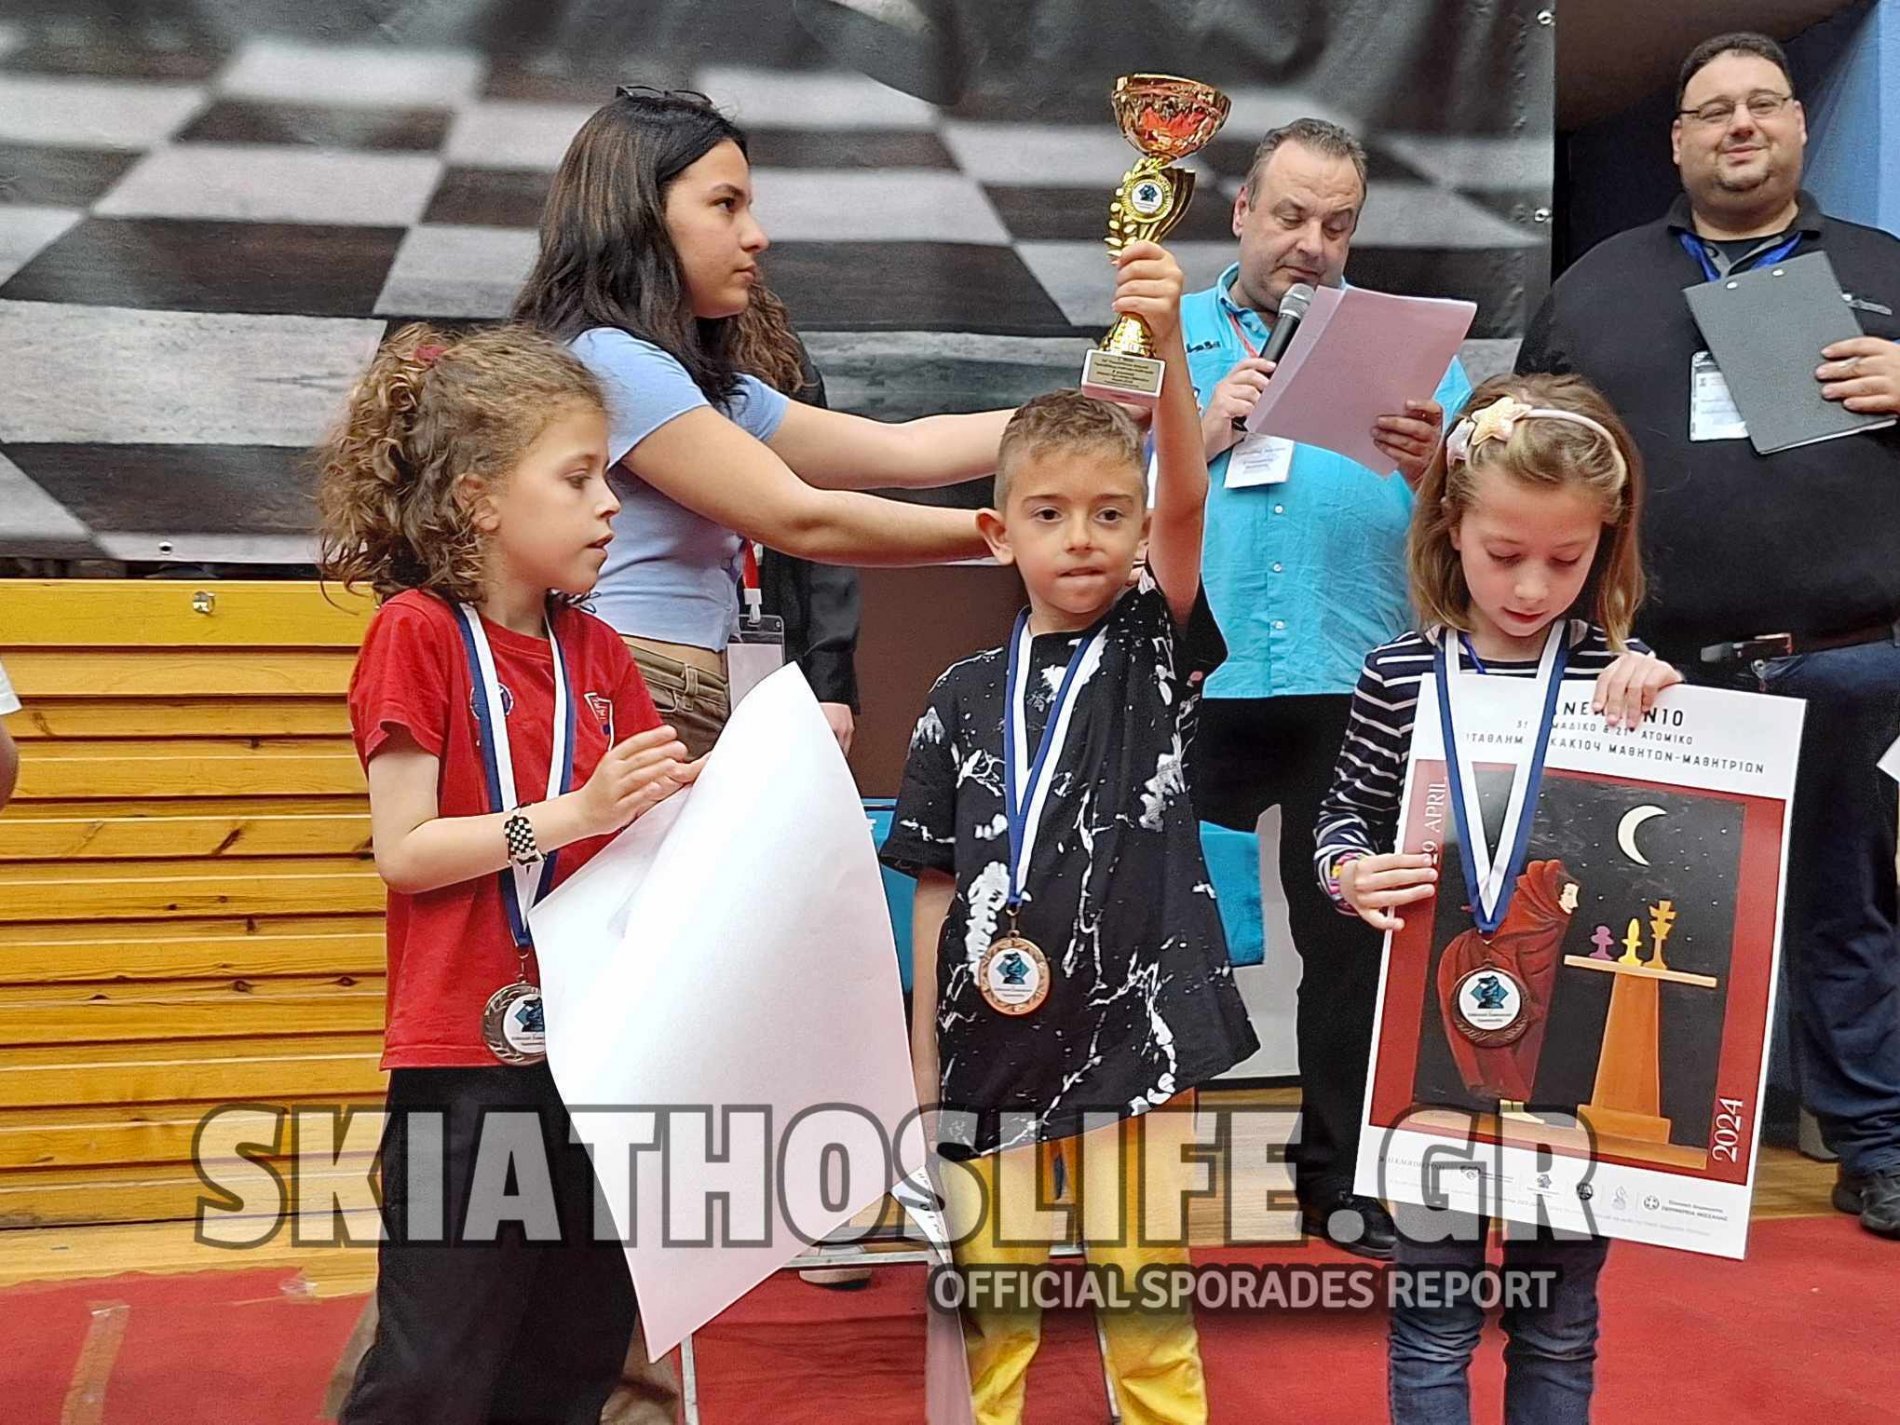 Η Σκιάθος γράφει ιστορία στο Σκάκι | Δύο χρυσά μετάλλια κατέκτησαν μαθητές στο Πανελλήνιο Μαθητικό Πρωτάθλημα